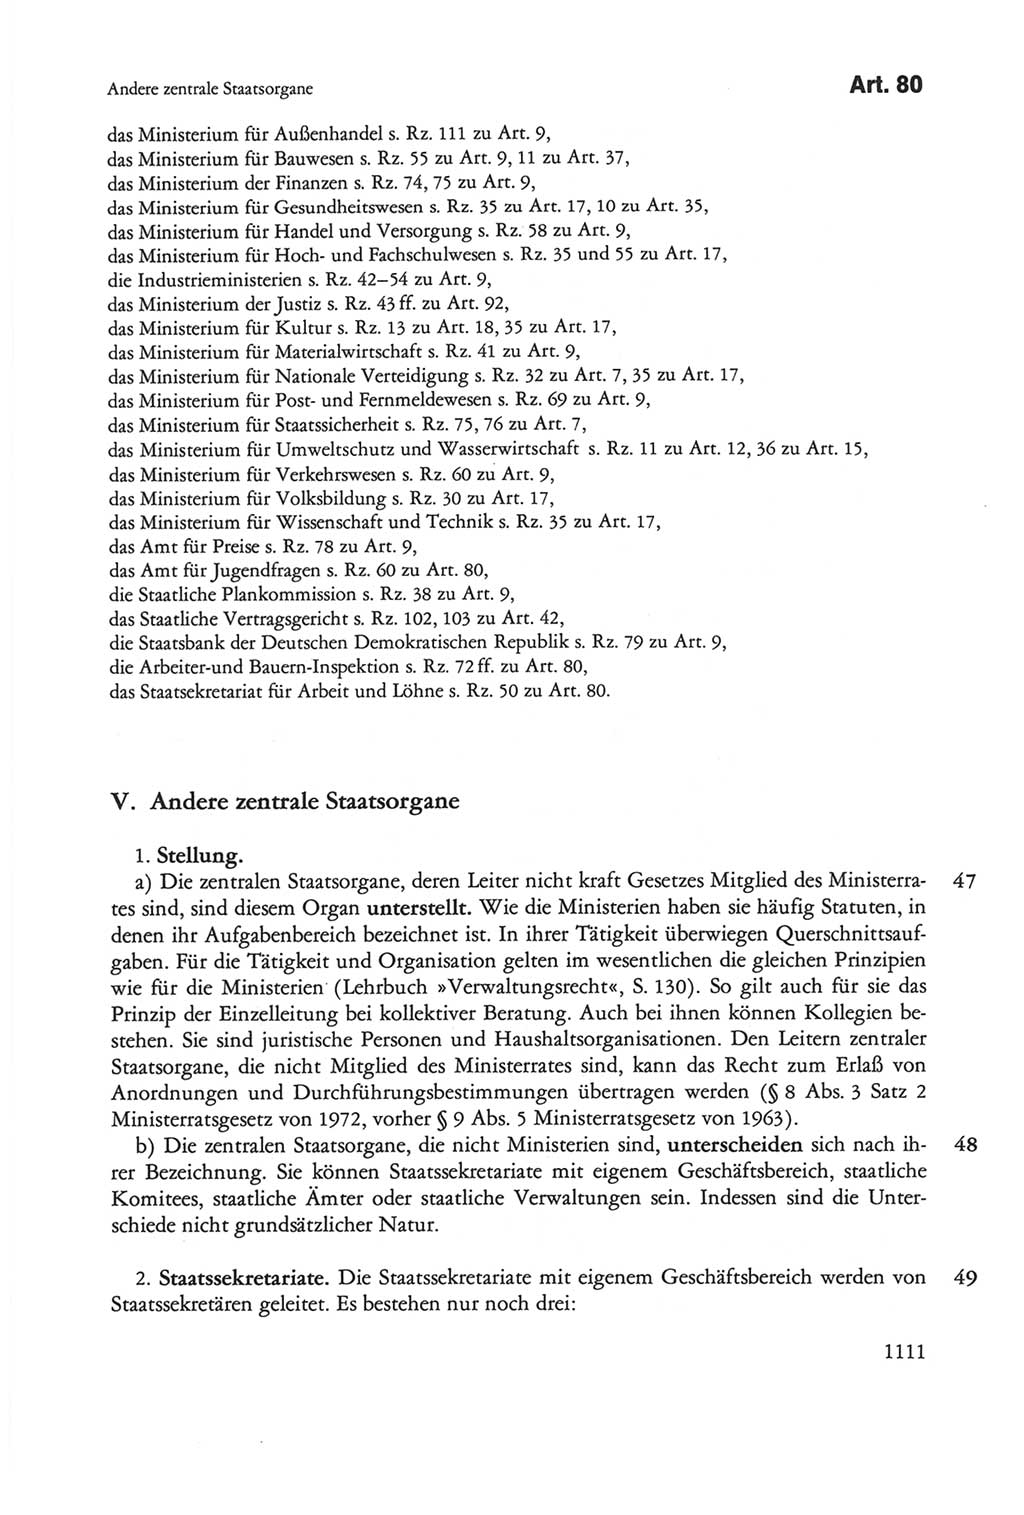 Die sozialistische Verfassung der Deutschen Demokratischen Republik (DDR), Kommentar mit einem Nachtrag 1997, Seite 1111 (Soz. Verf. DDR Komm. Nachtr. 1997, S. 1111)